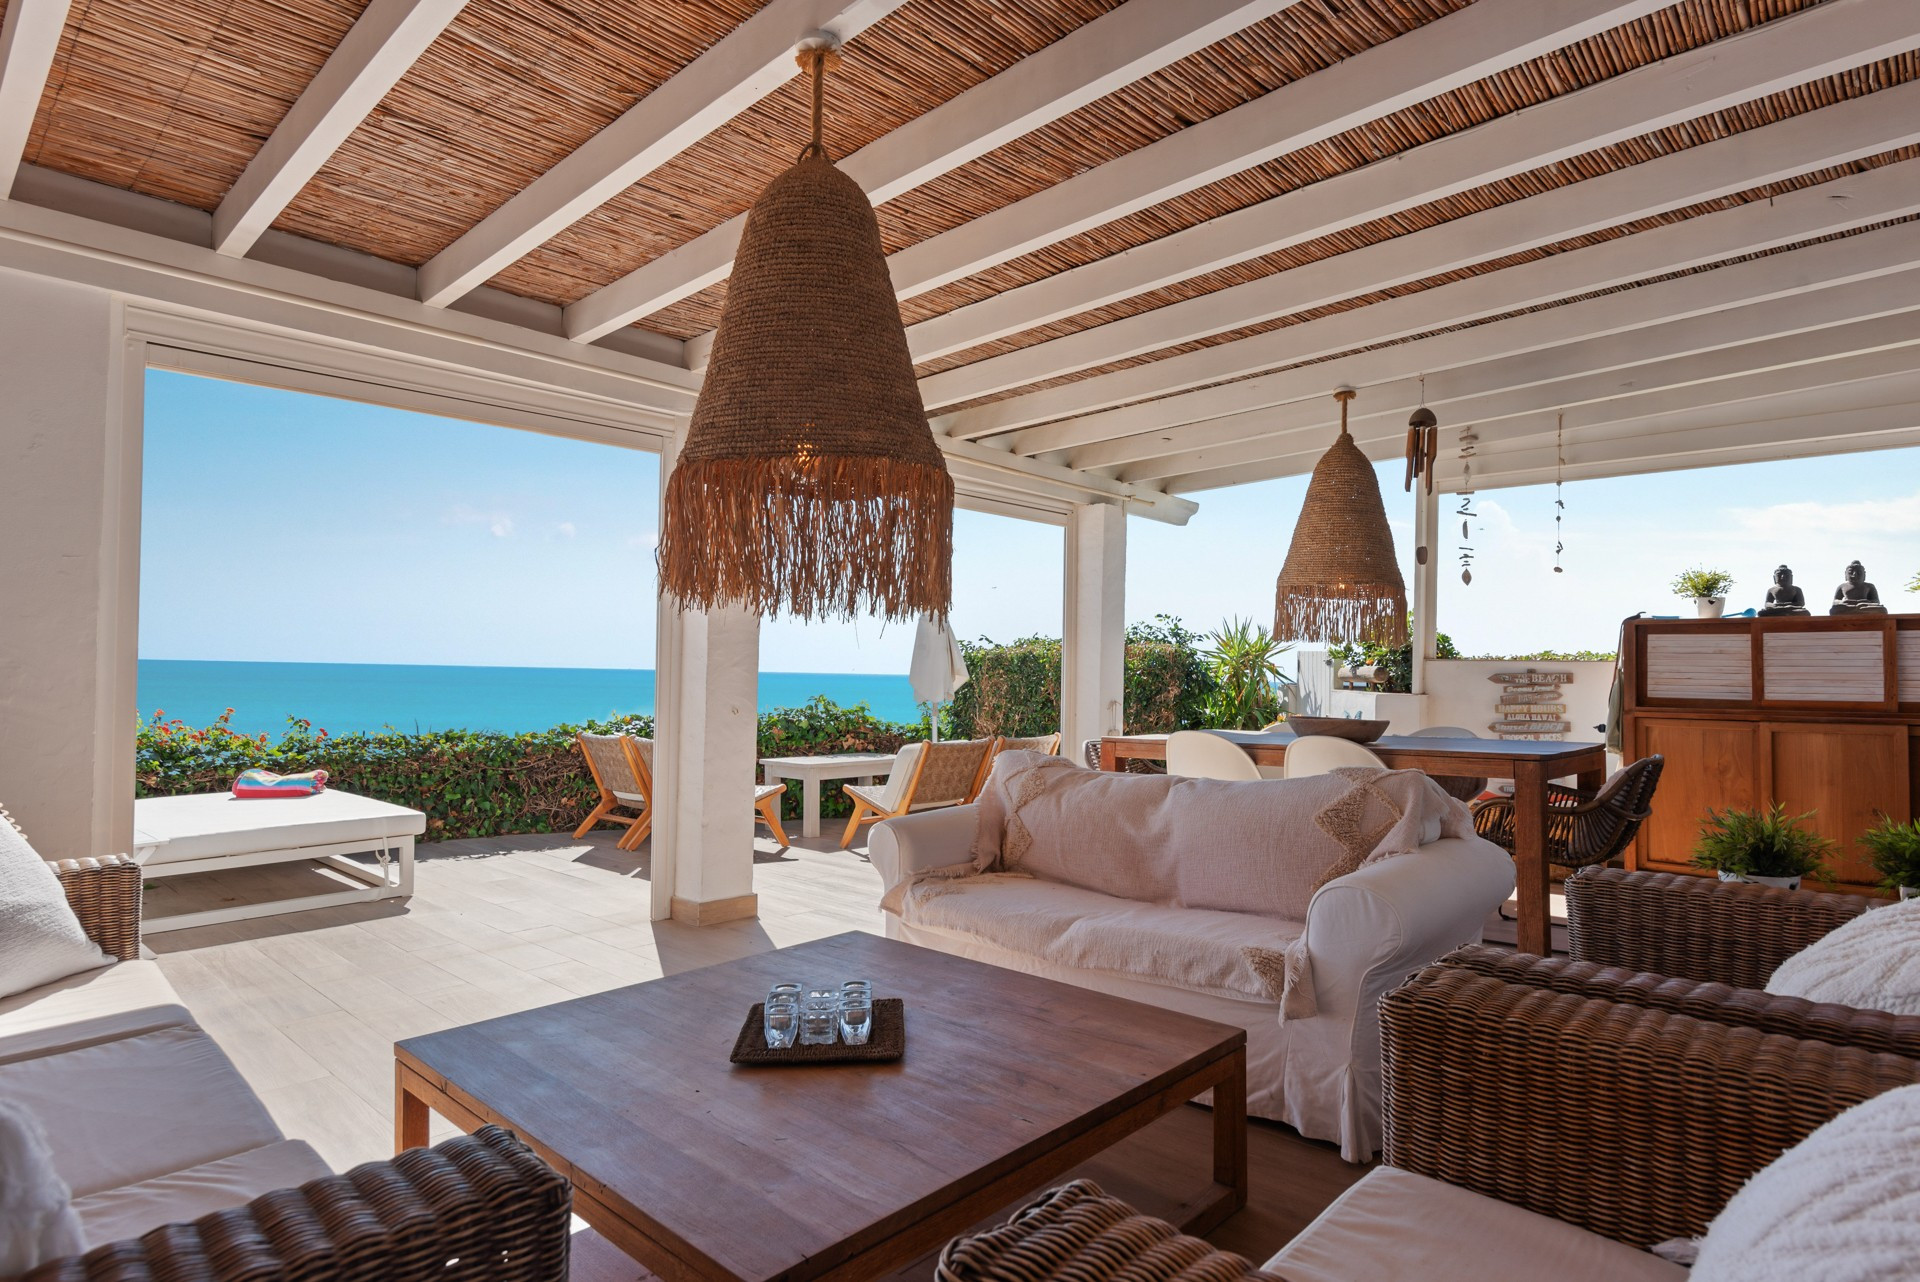 Preciosa casa adosada en primera línea de playa, orientada al sur, con vistas panorámicas al Mediterráneo